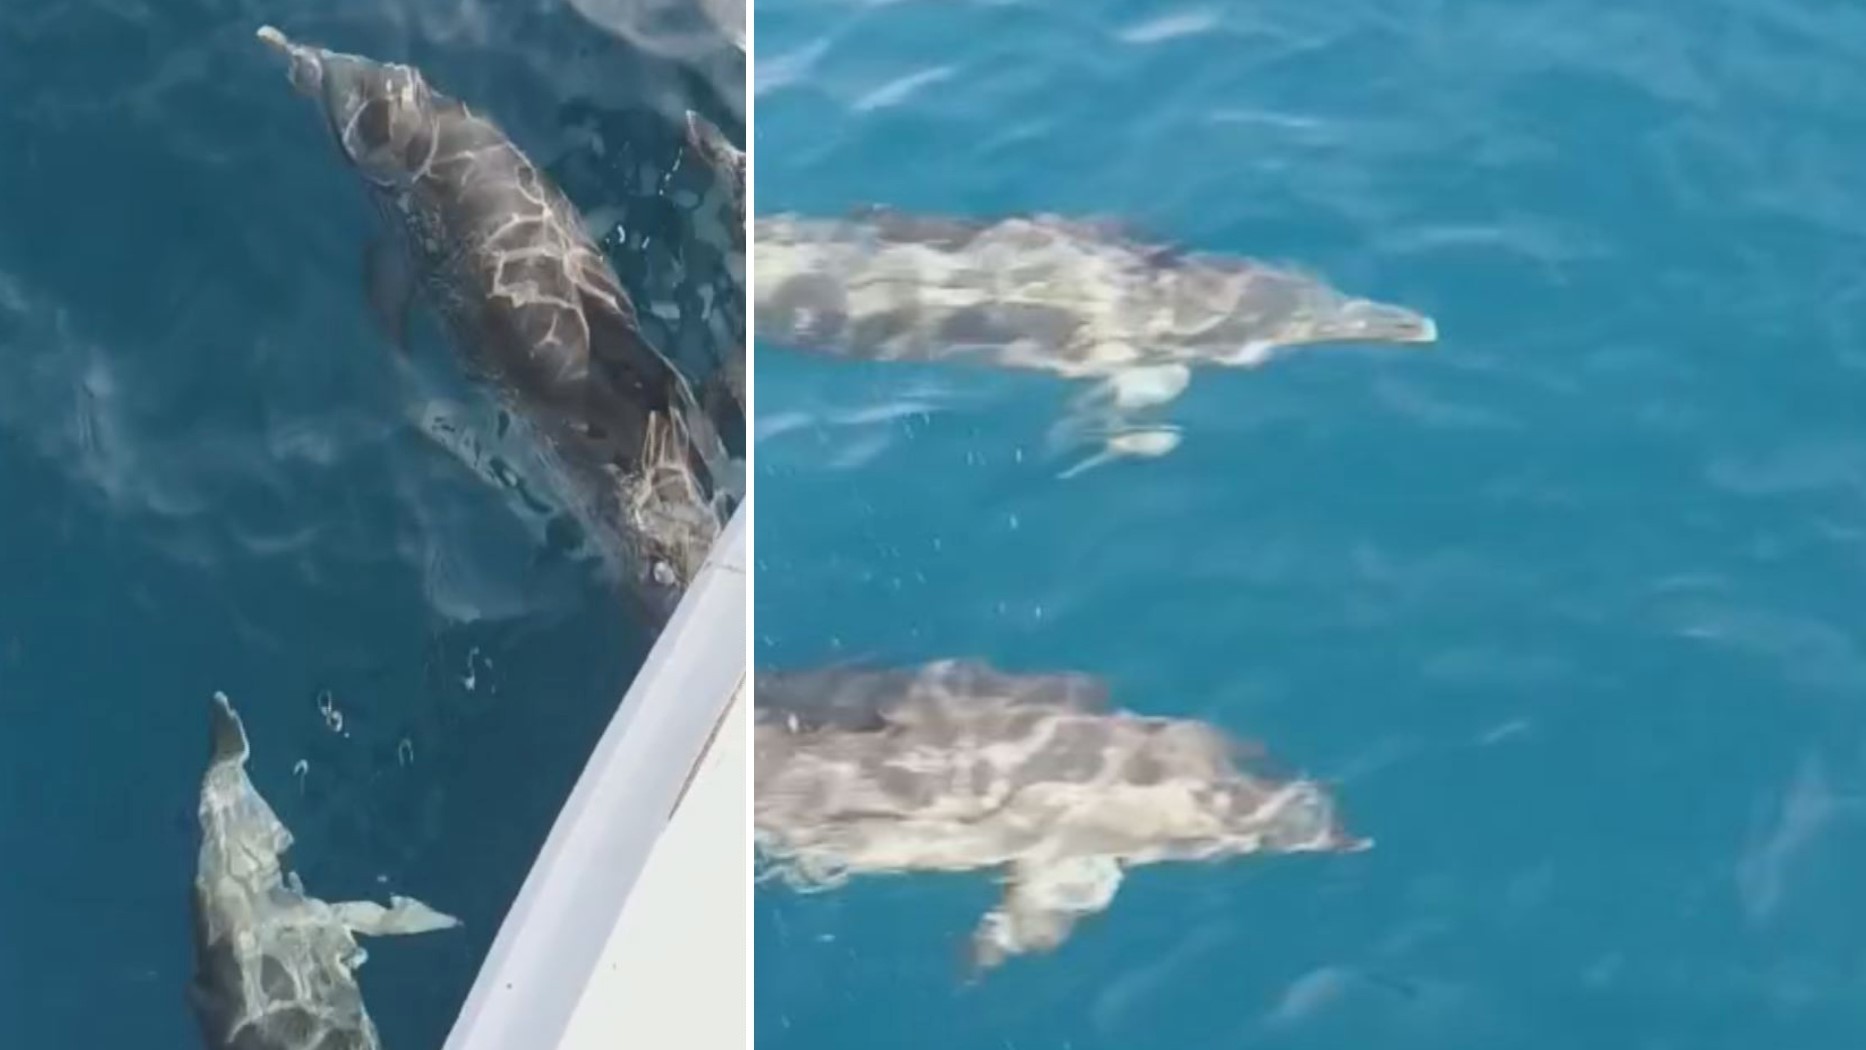 Biólogo registra aparição de grupo de golfinhos com filhotes na Baía de Santos: 'dádiva'